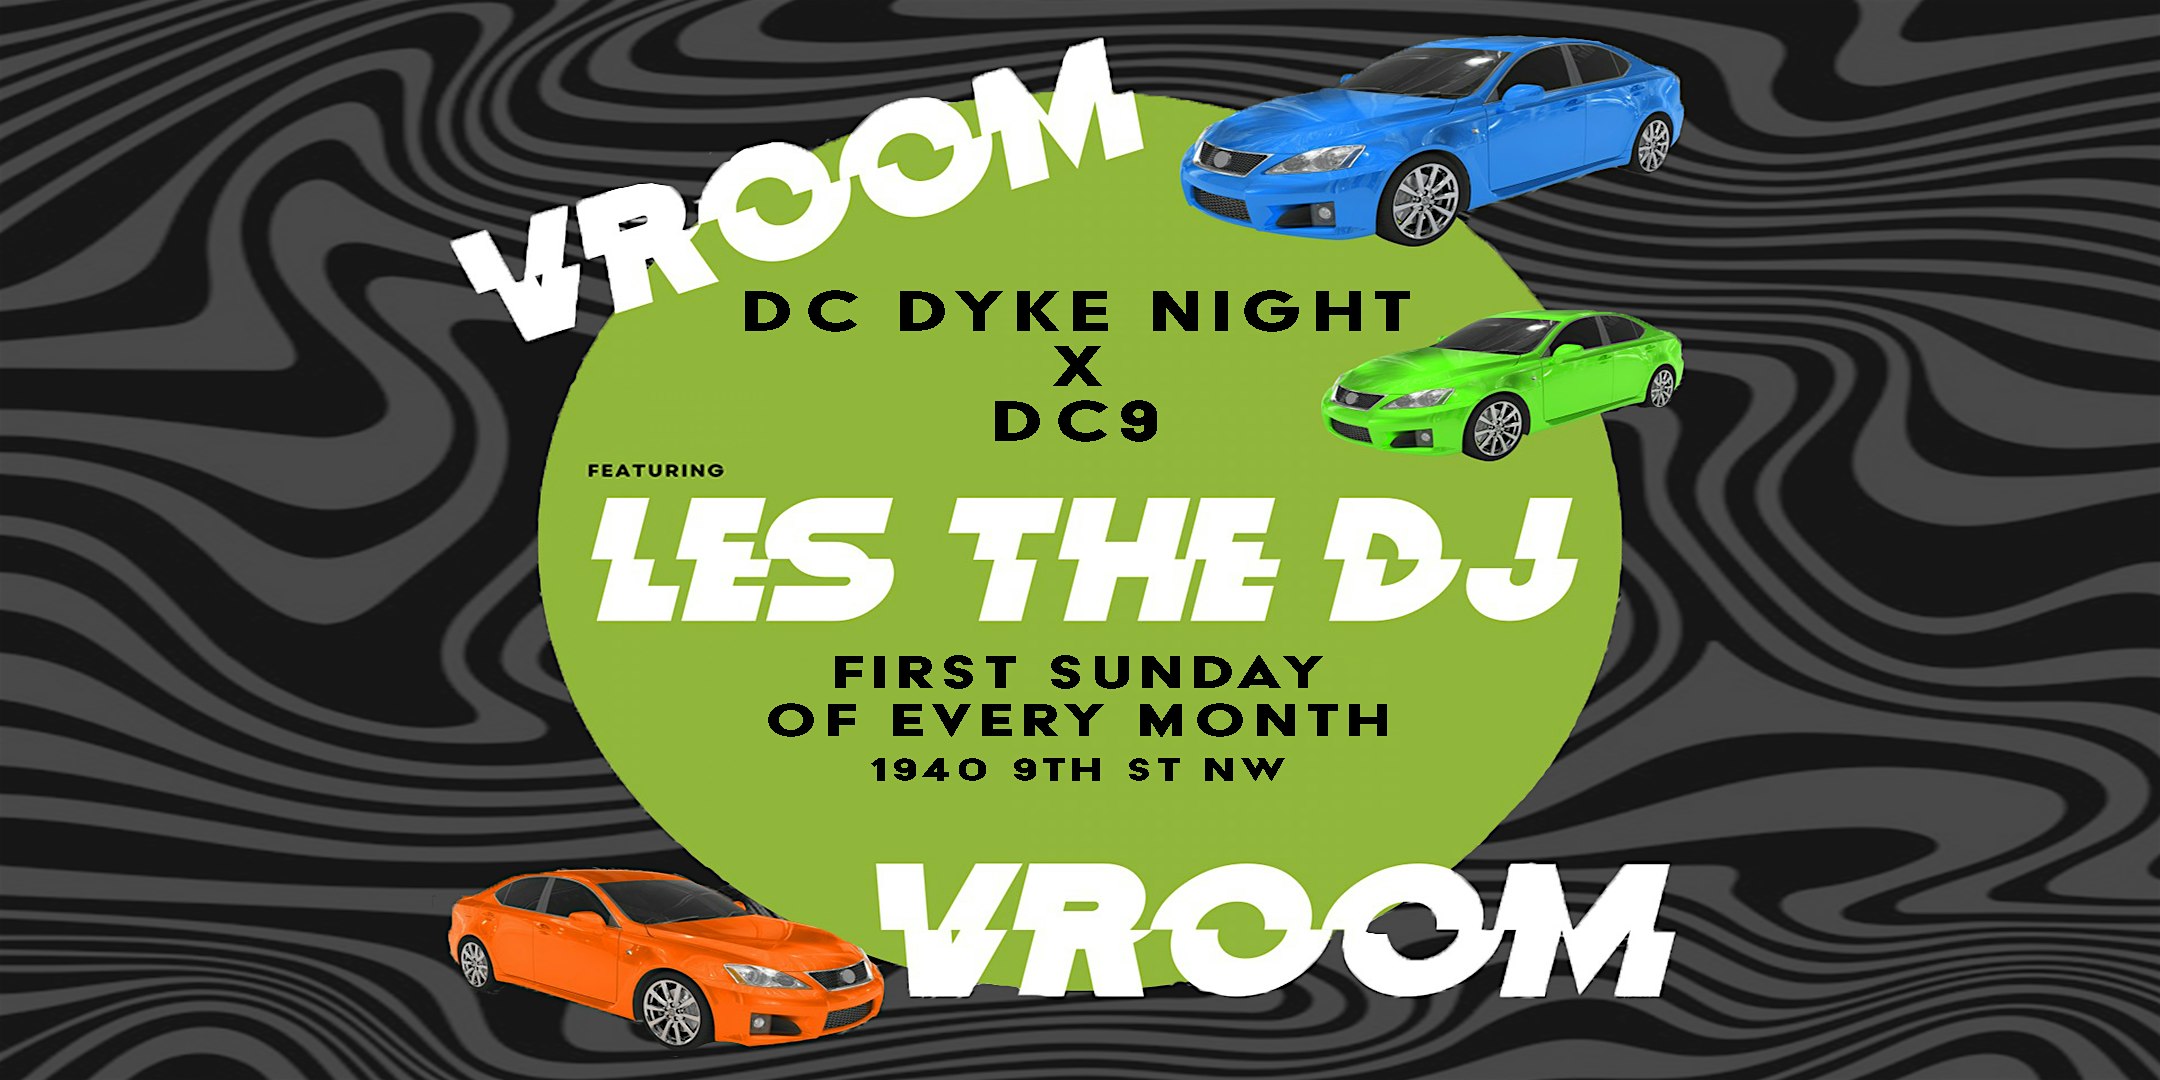 Vroom Vroom… A DC Dyke Night Tea Party